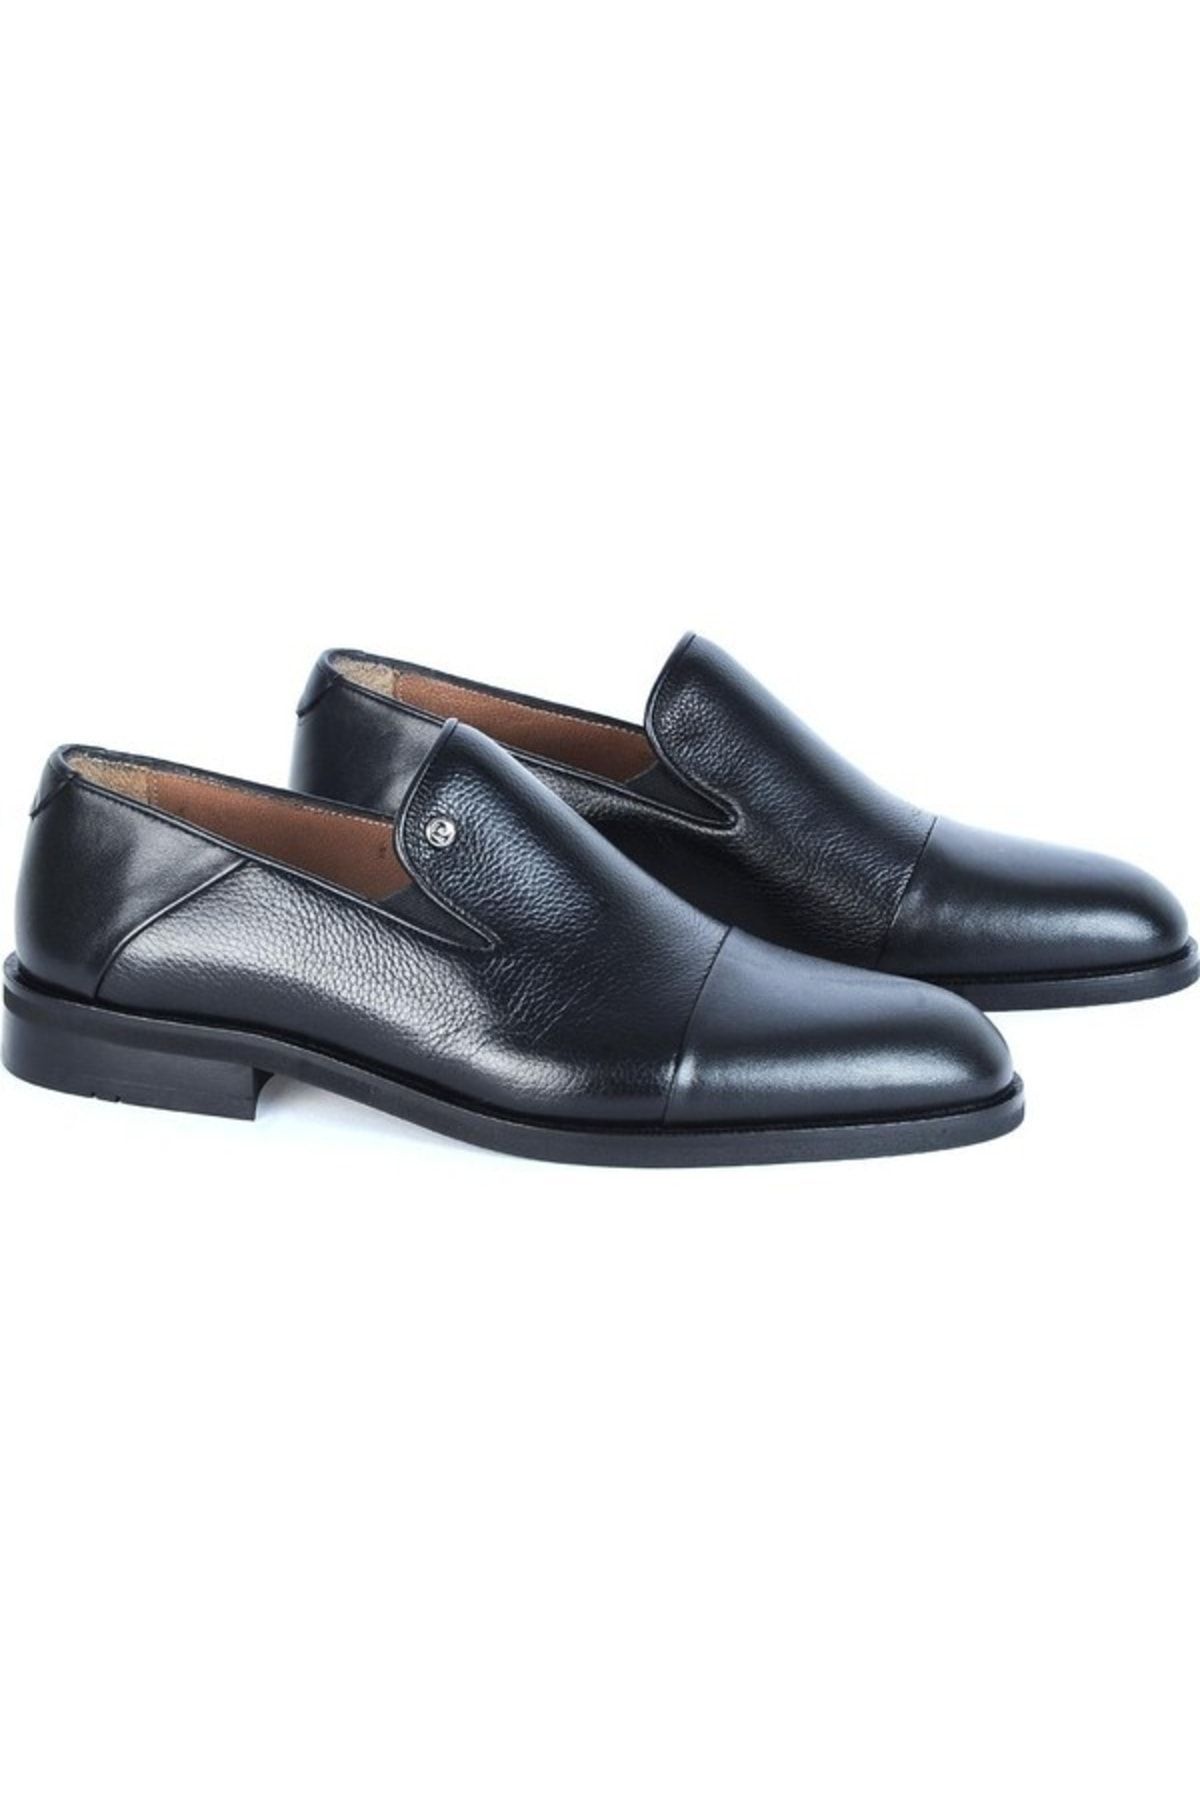 Pierre Cardin 104h11 Exclusıve Siyah Geyik Erkek Klasik Ayakkabı